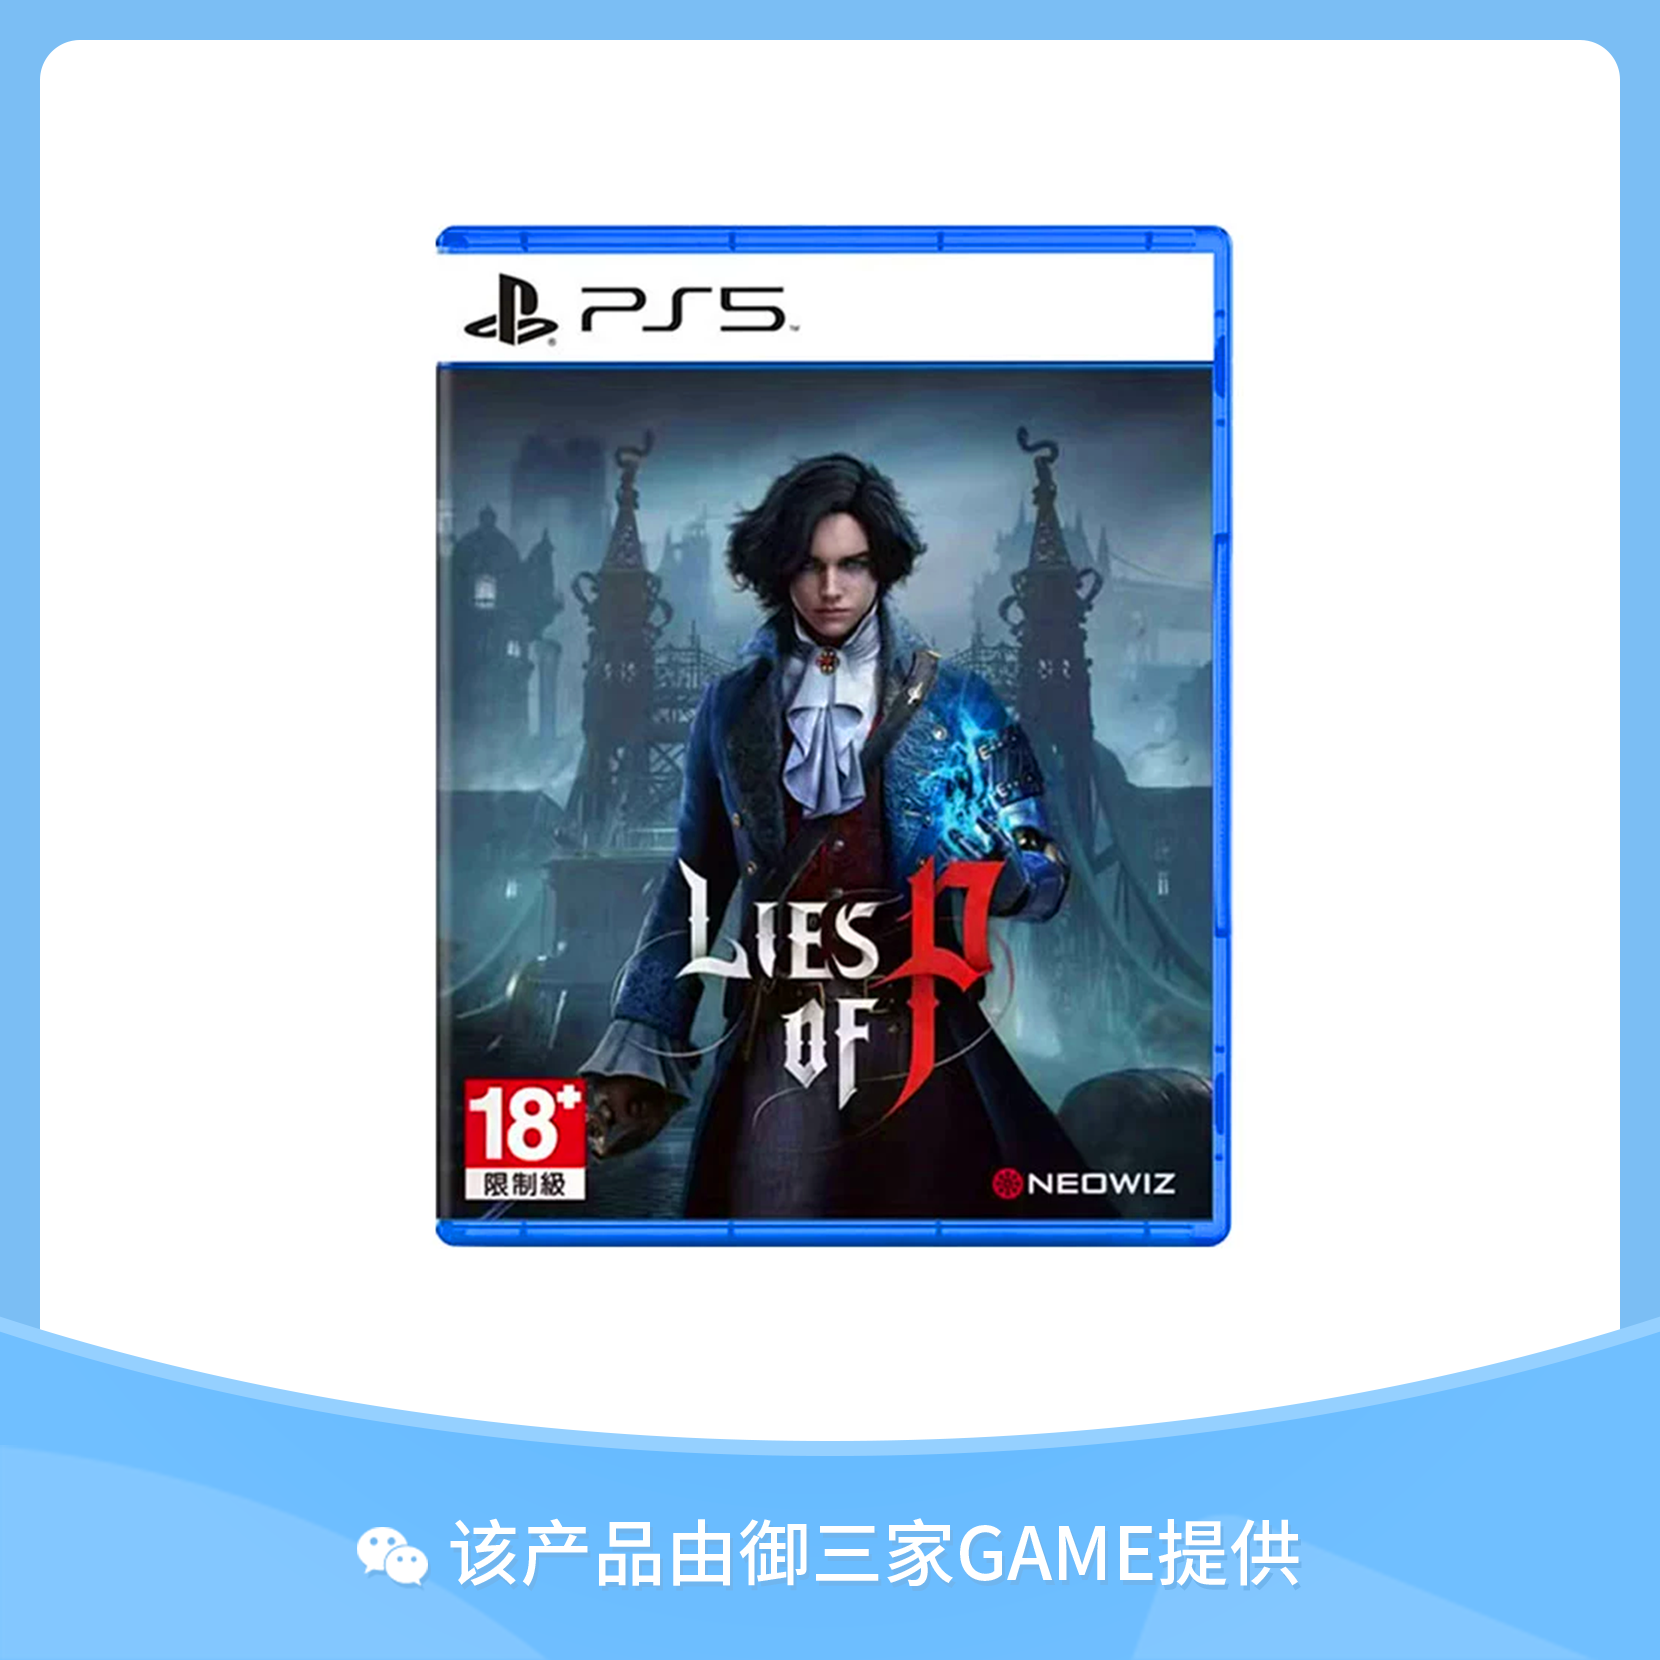 索尼PS5游戏 匹诺曹的谎言 Lies of P 中文